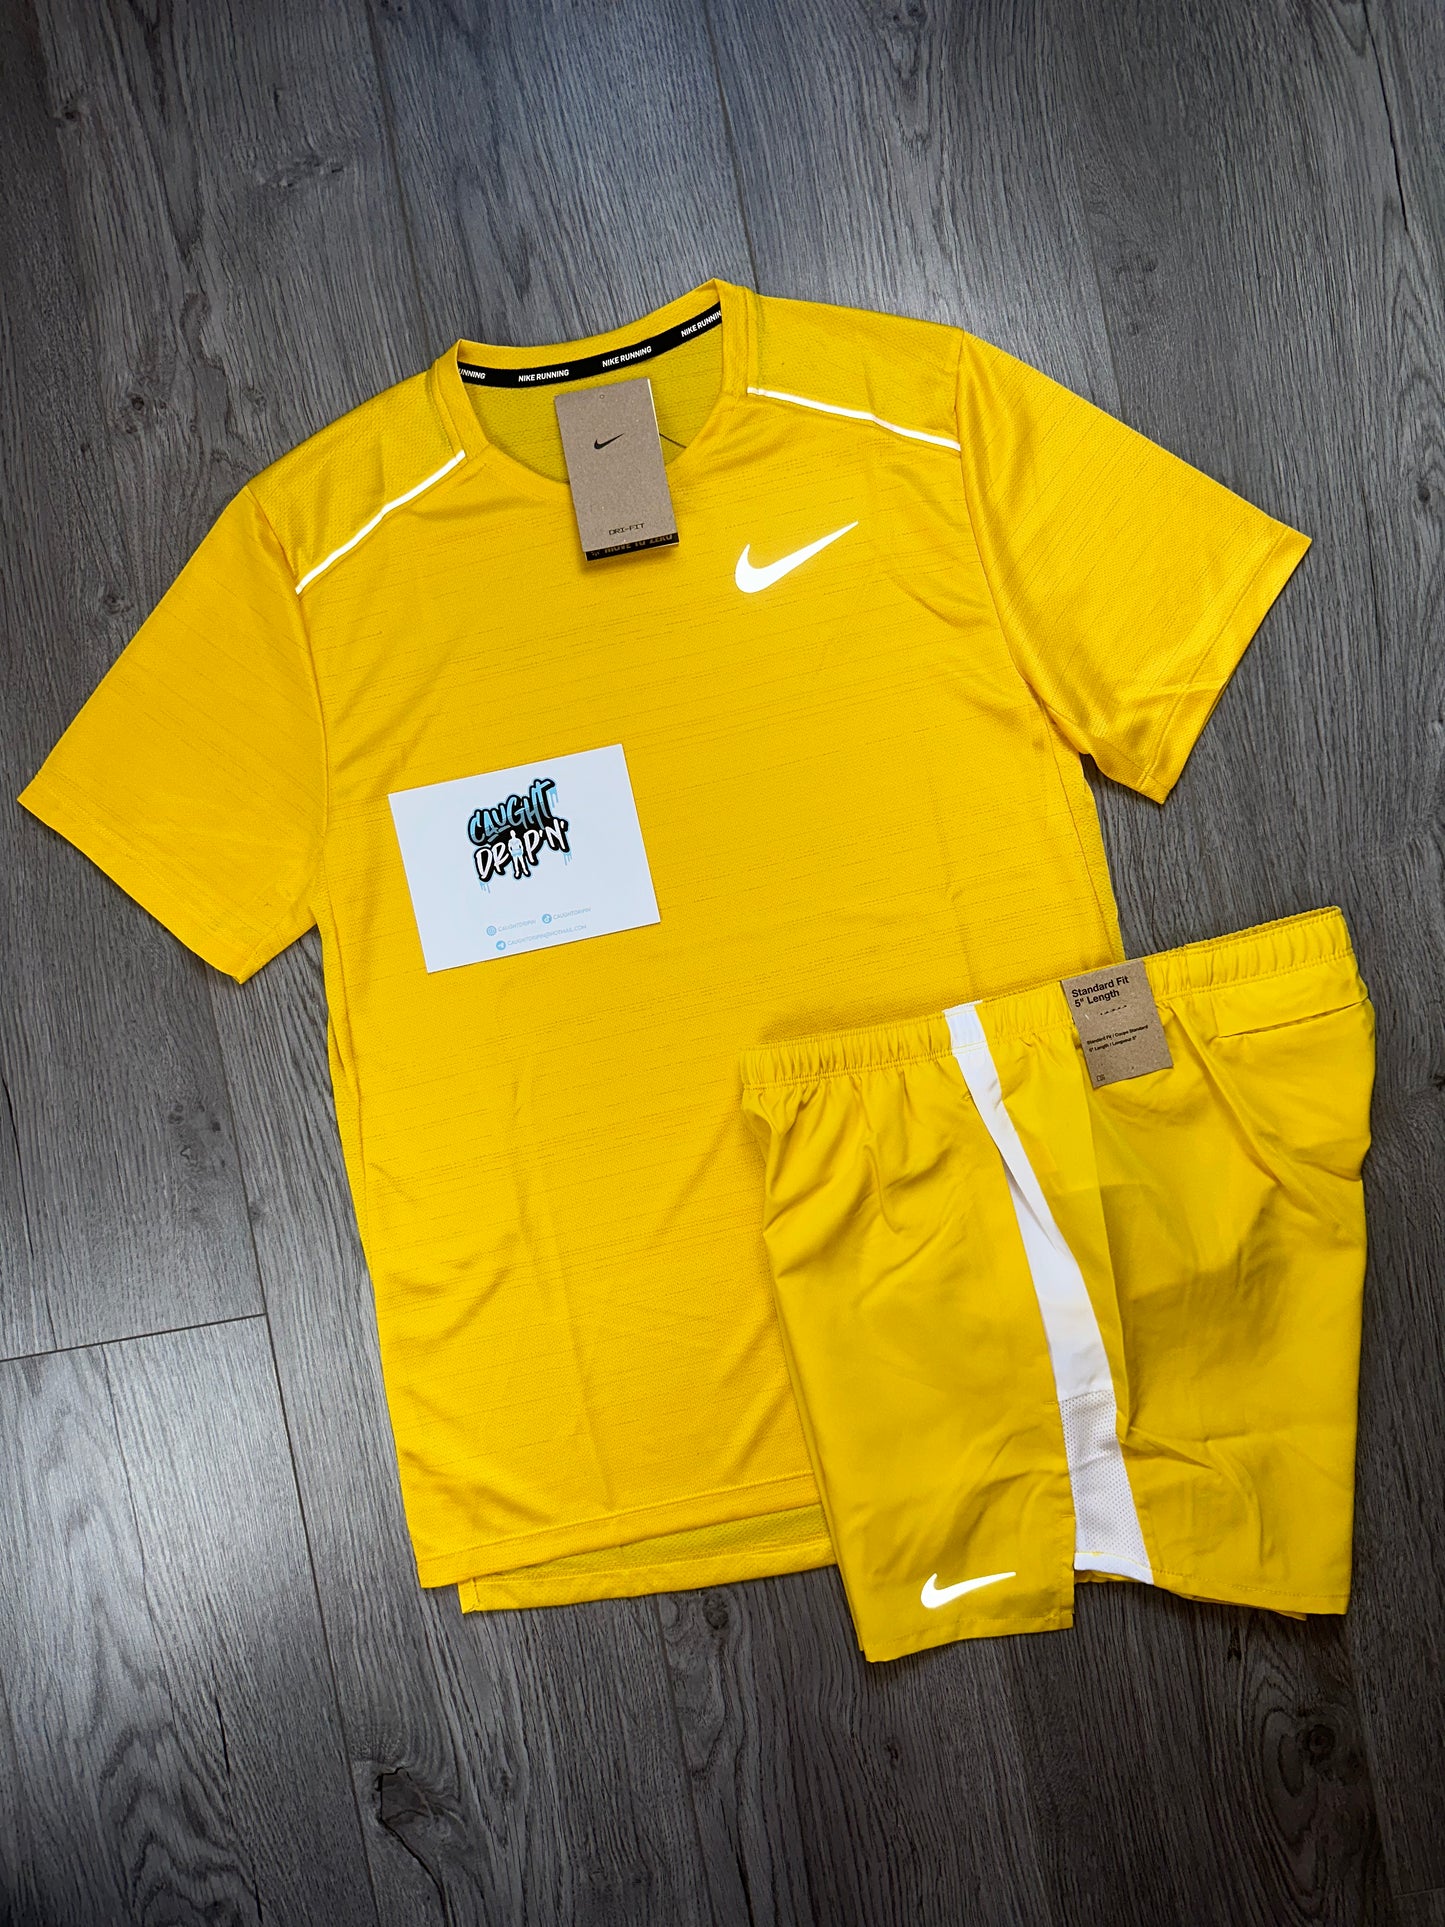 OG Sulphur Yellow Nike Miler Set